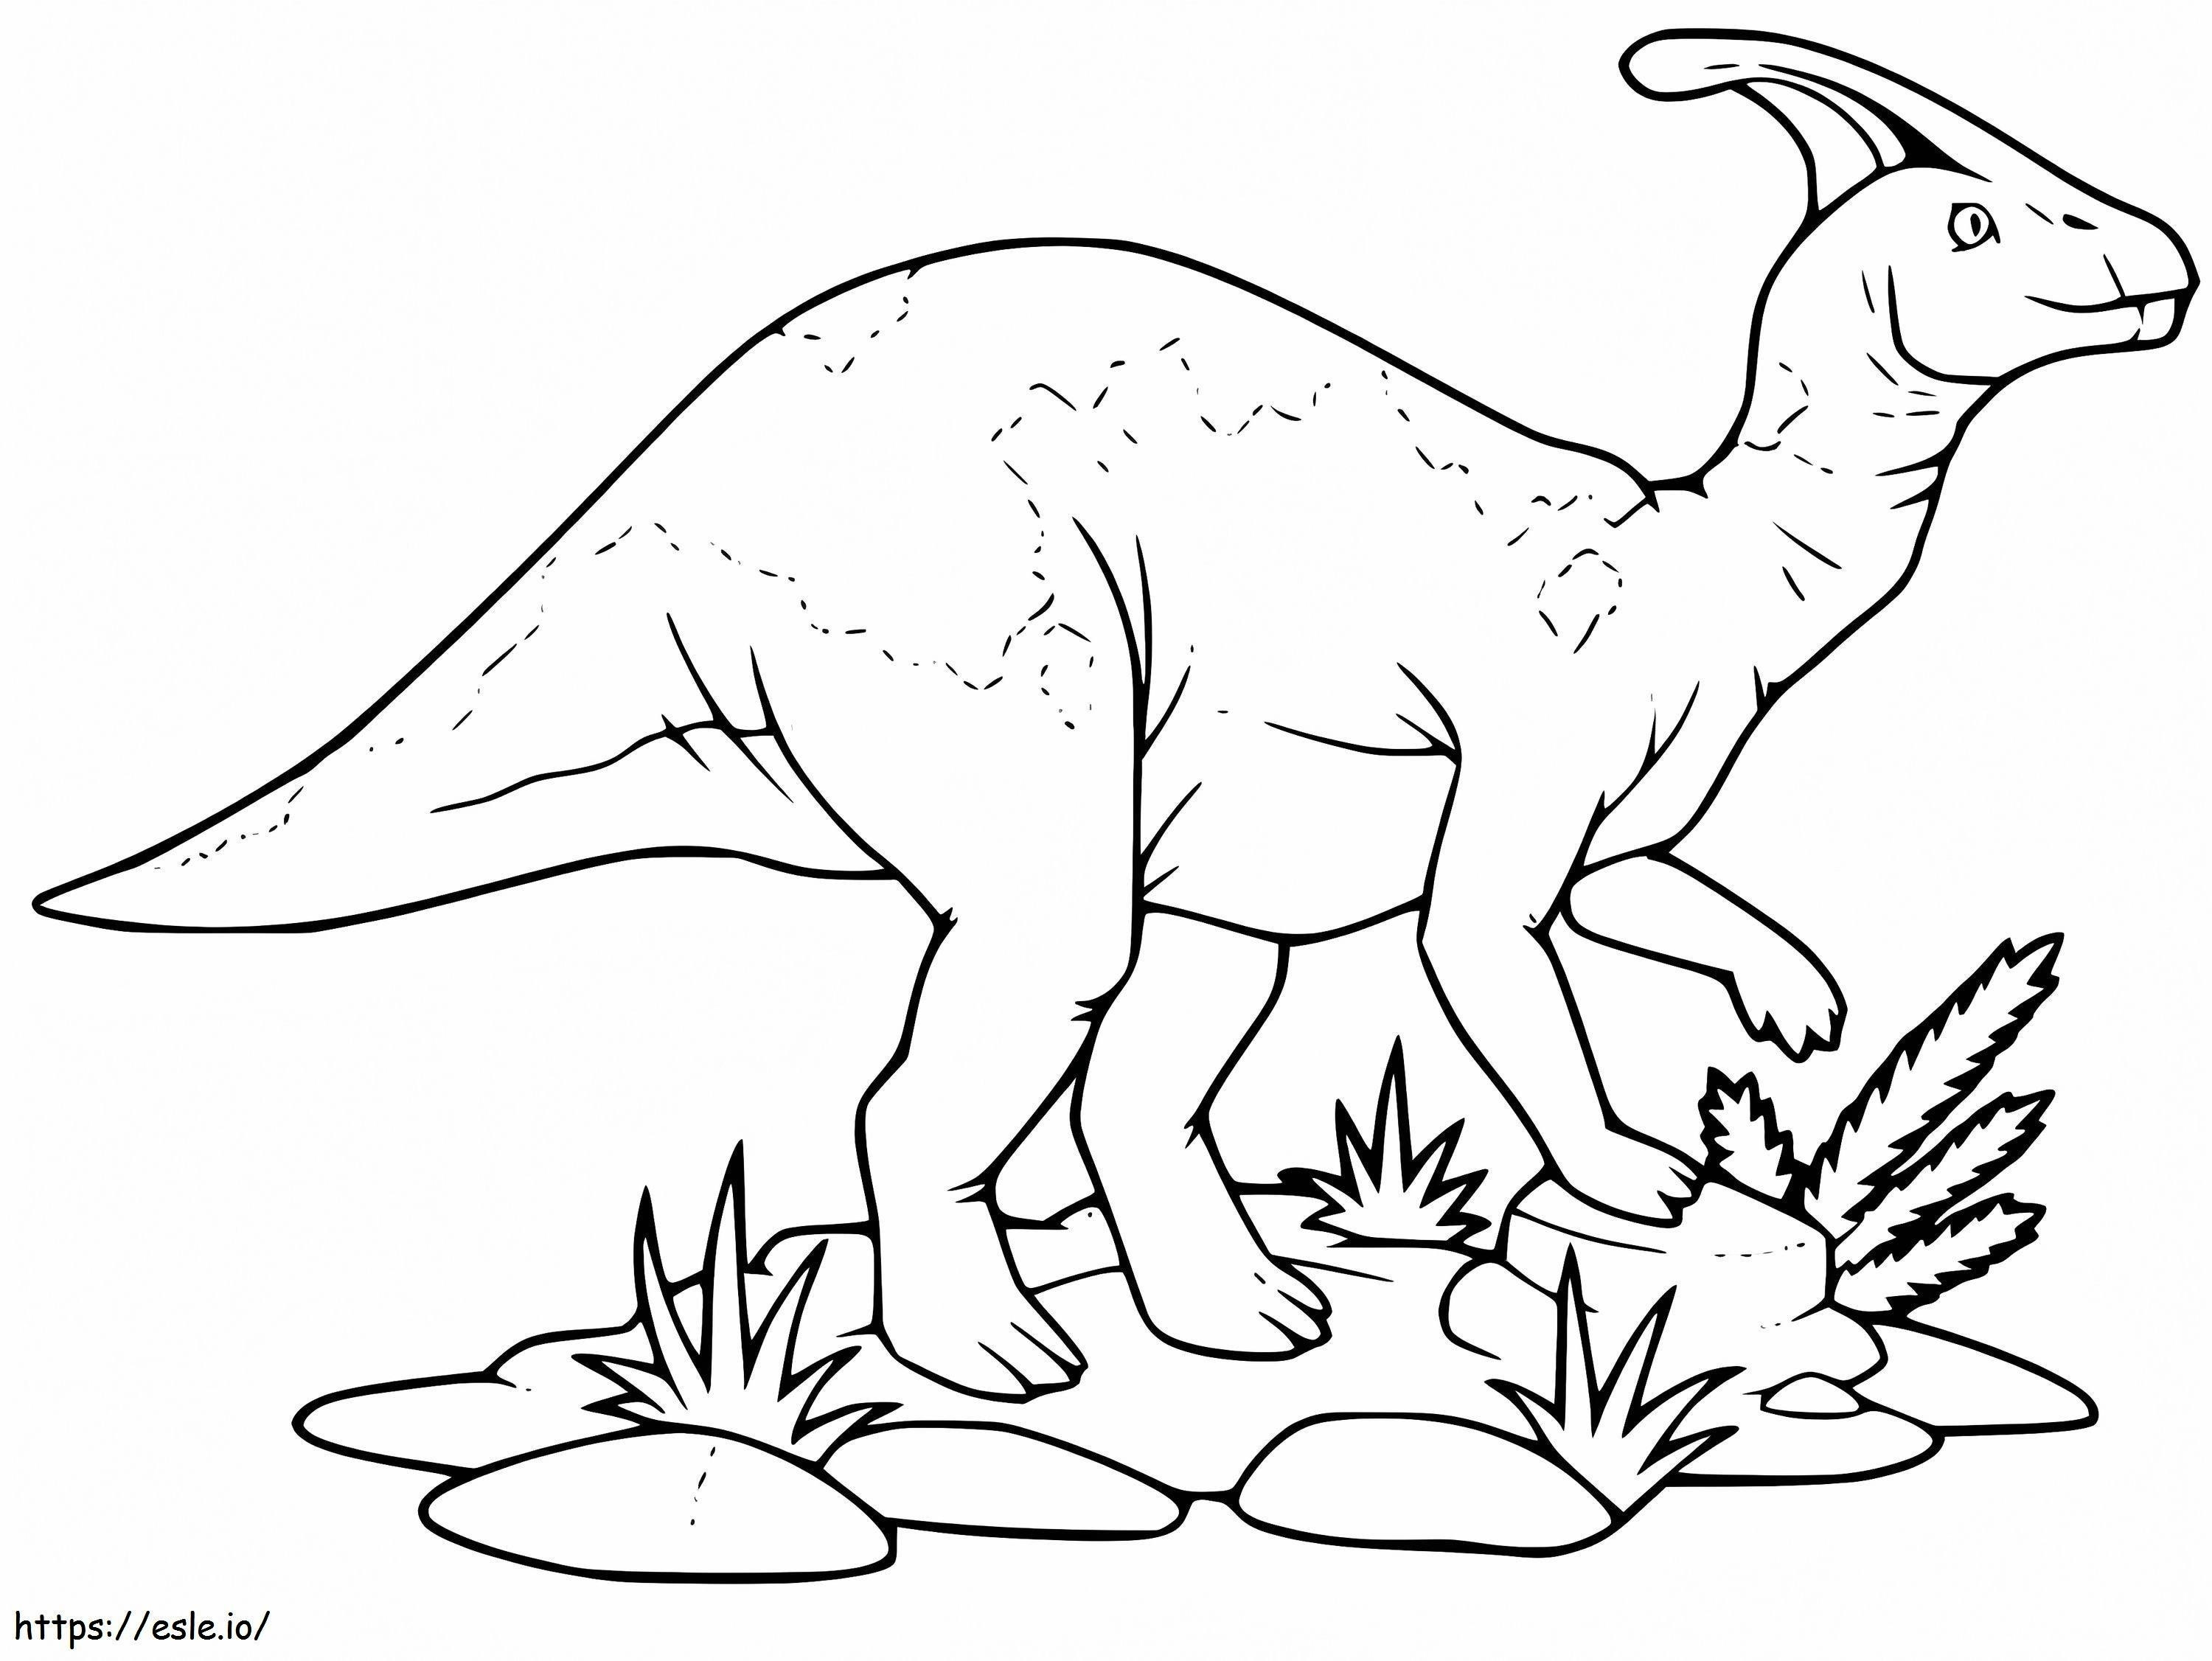 Coloriage Parasaurolophus 8 à imprimer dessin